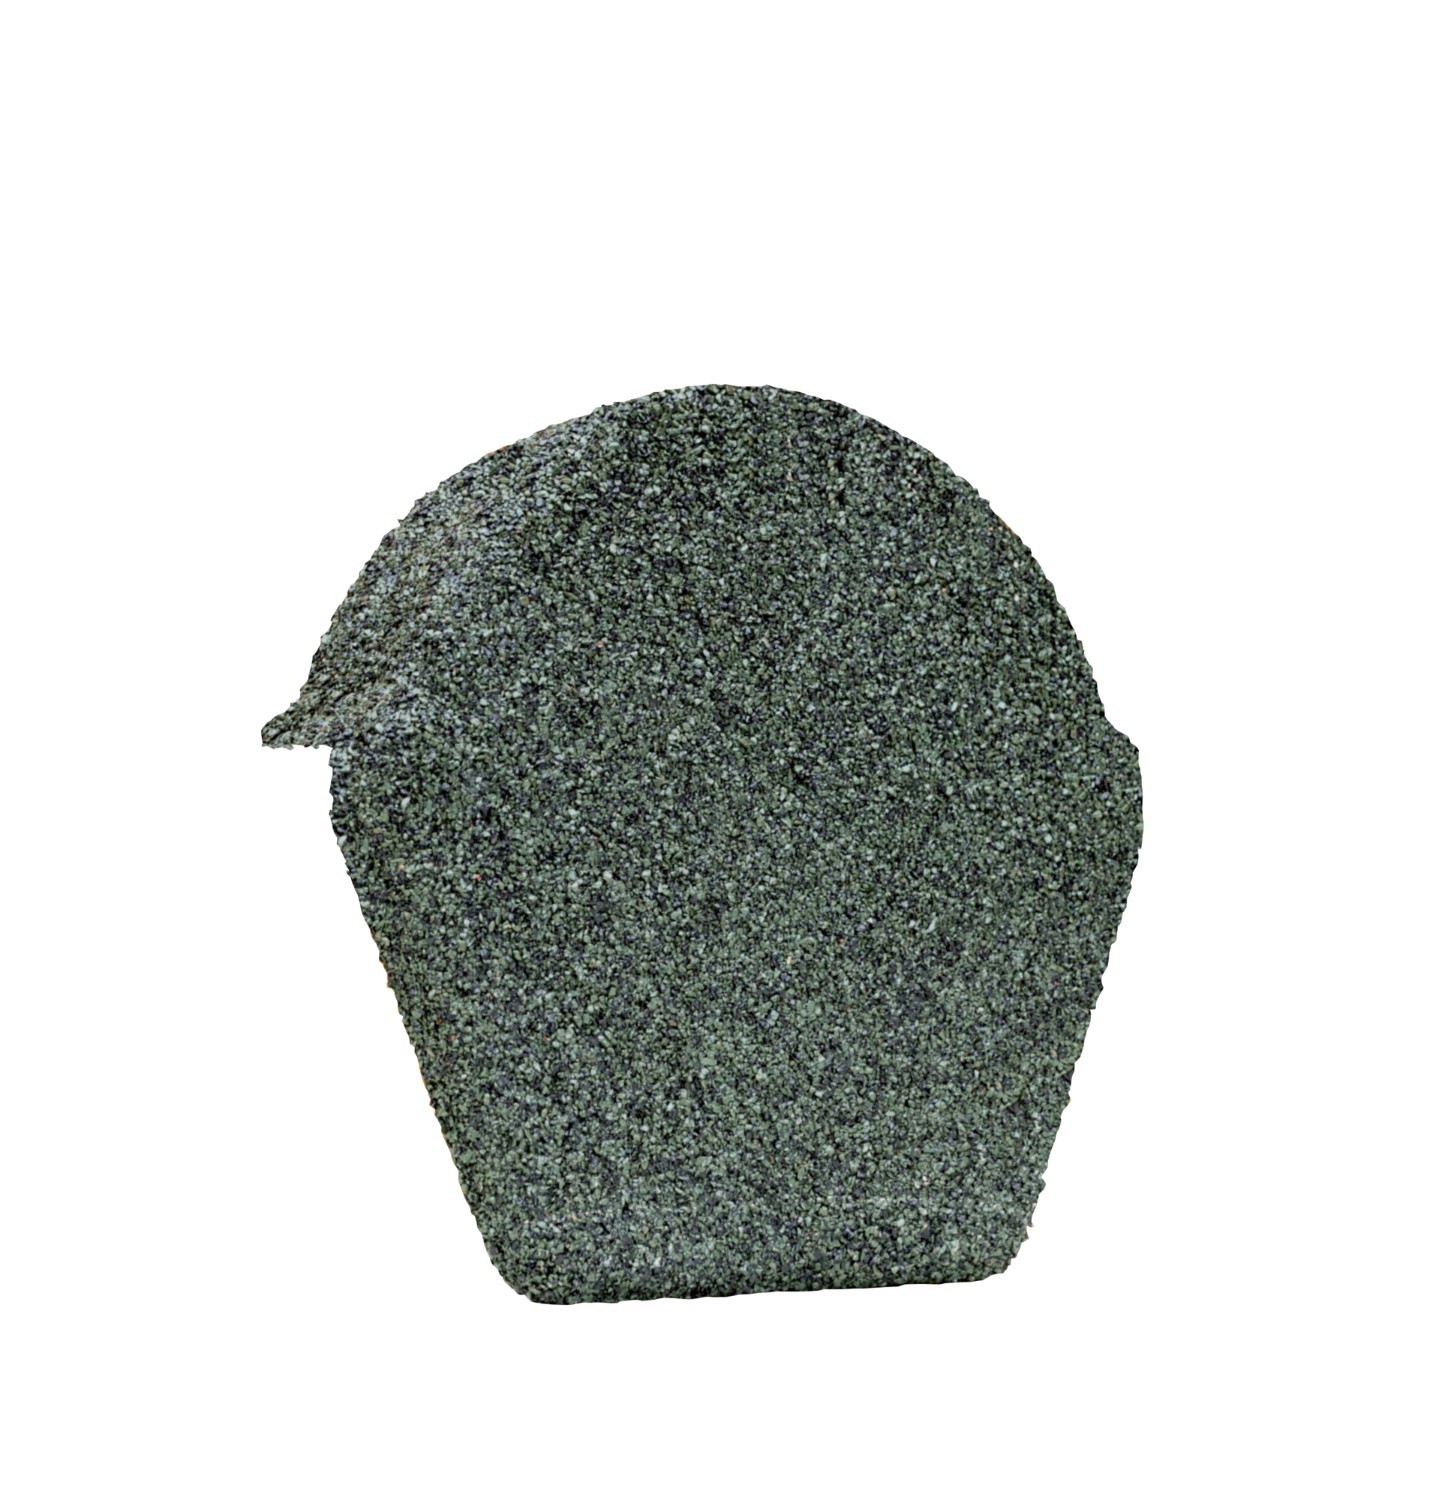 Lightweight Tiles - Granulated Ridge End Cap - Green